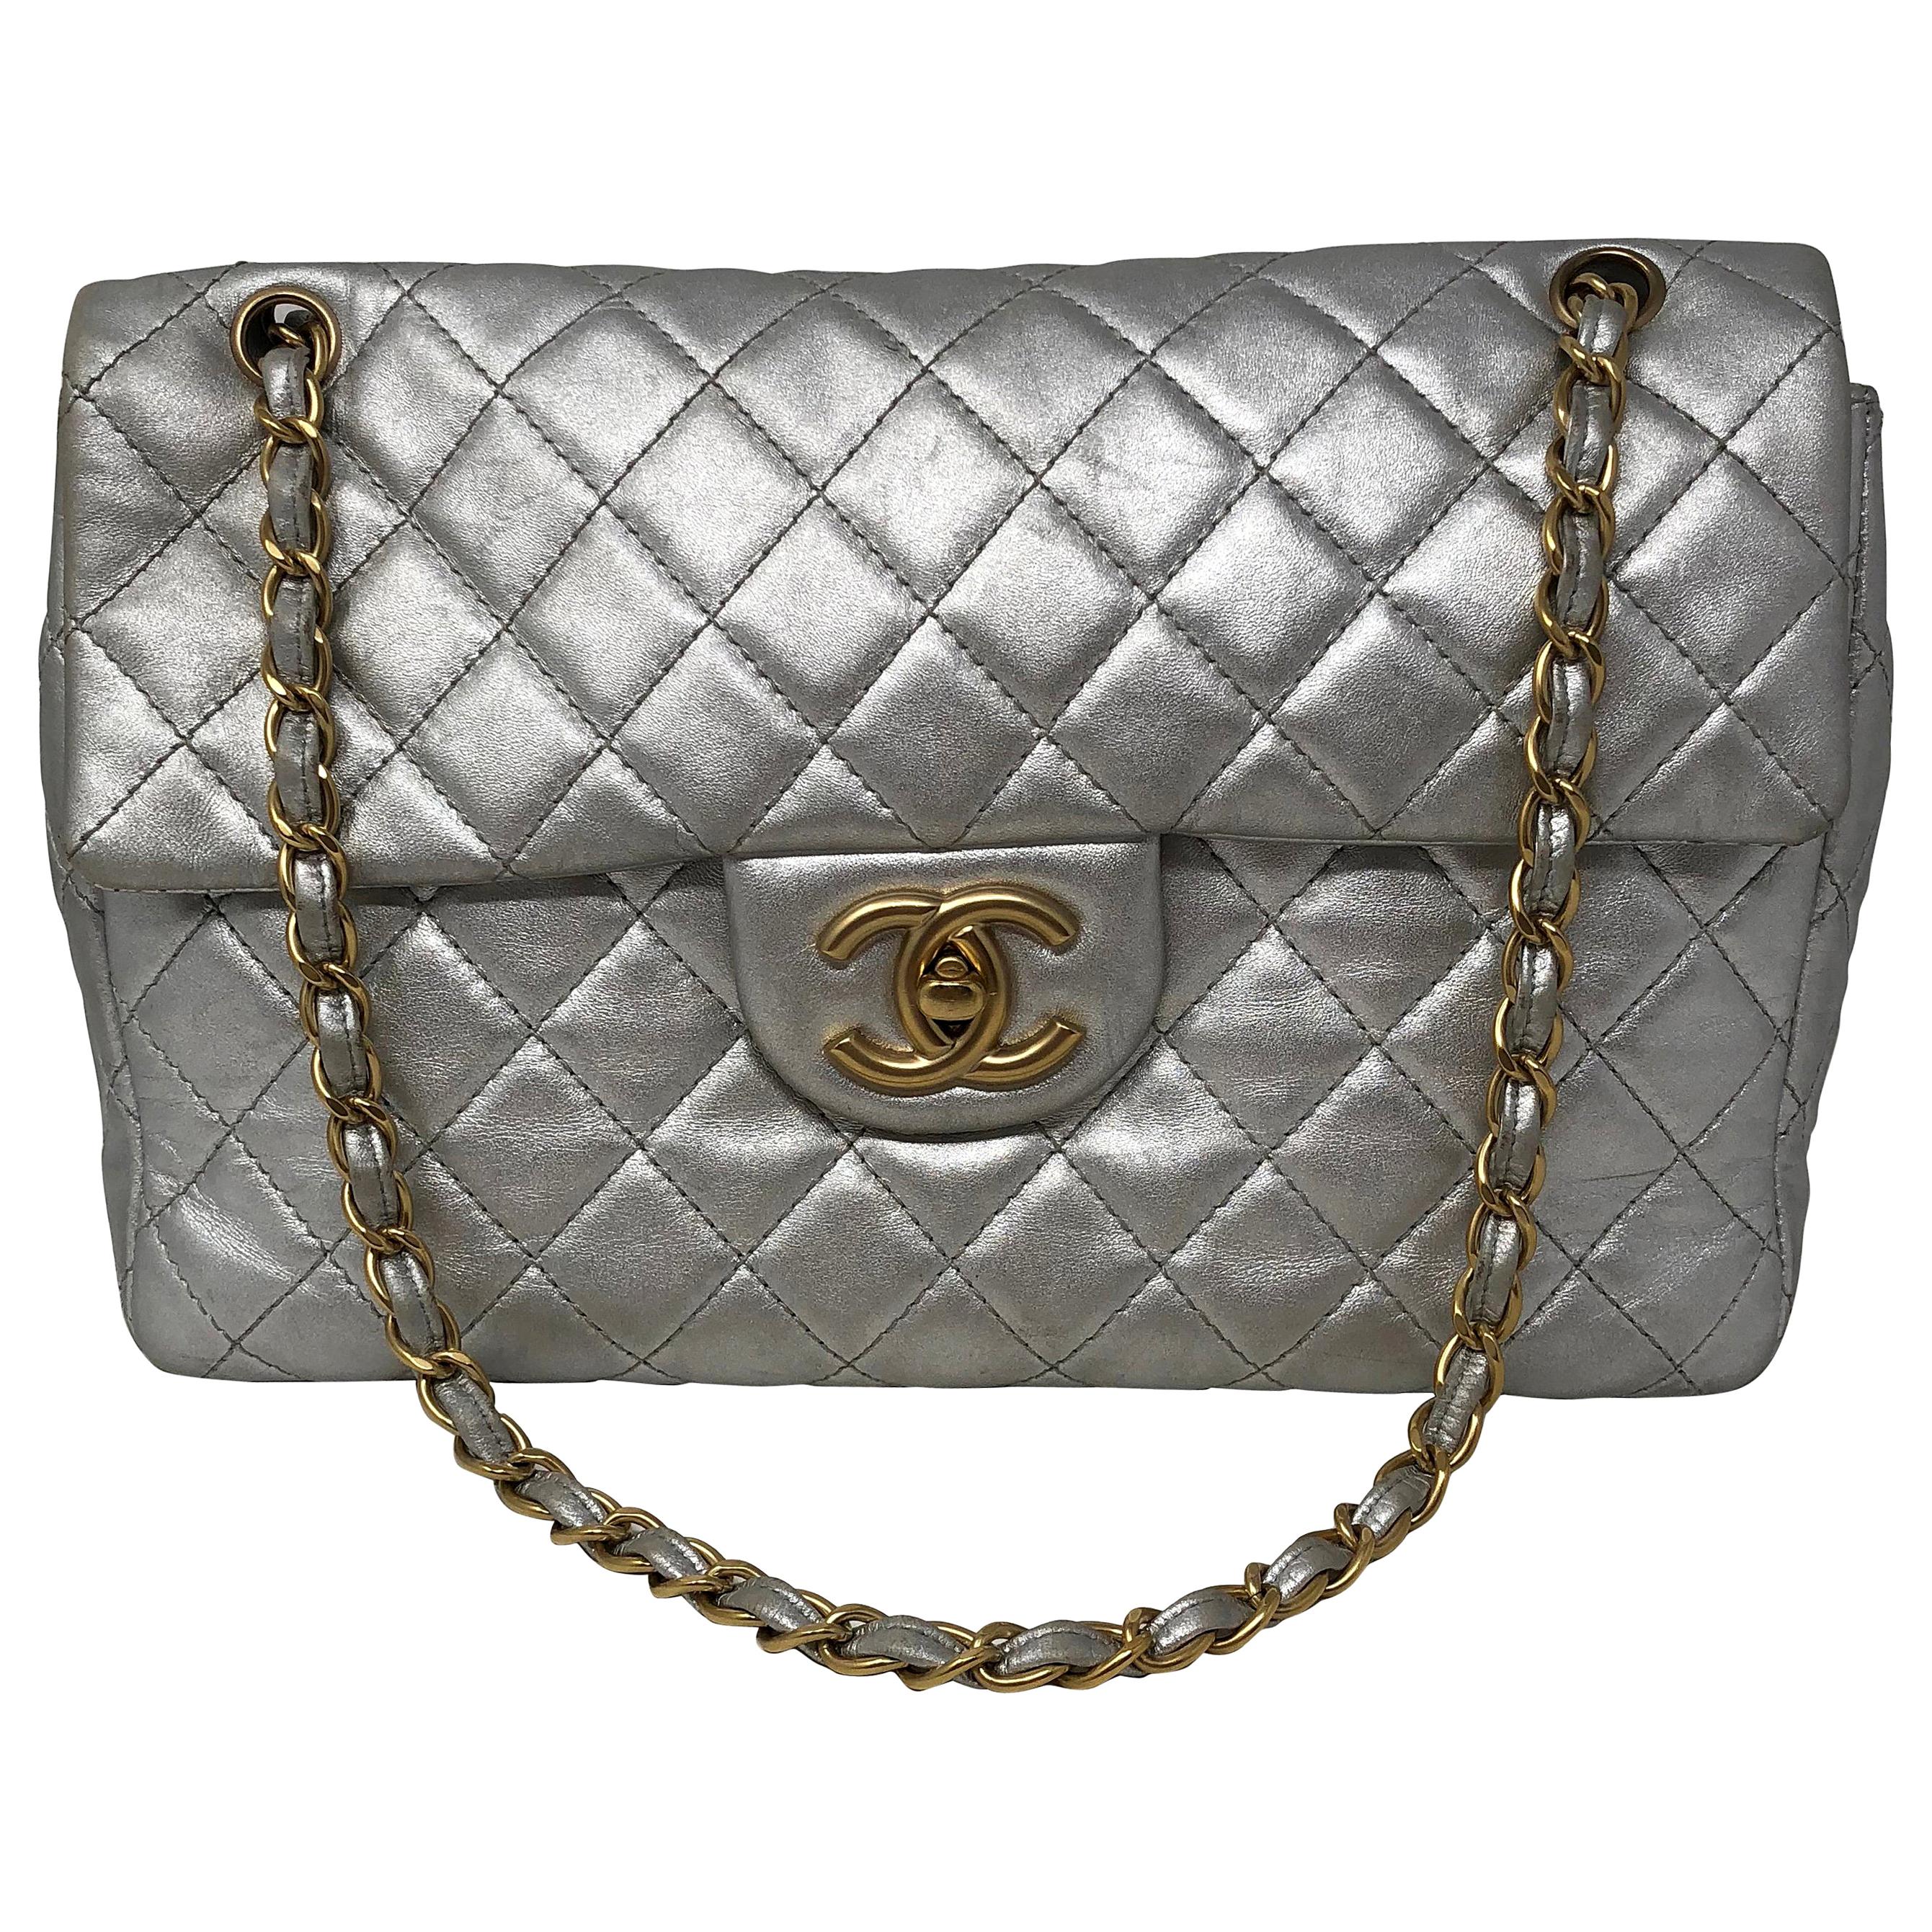 Chanel Silver Metallic Jumbo Bag